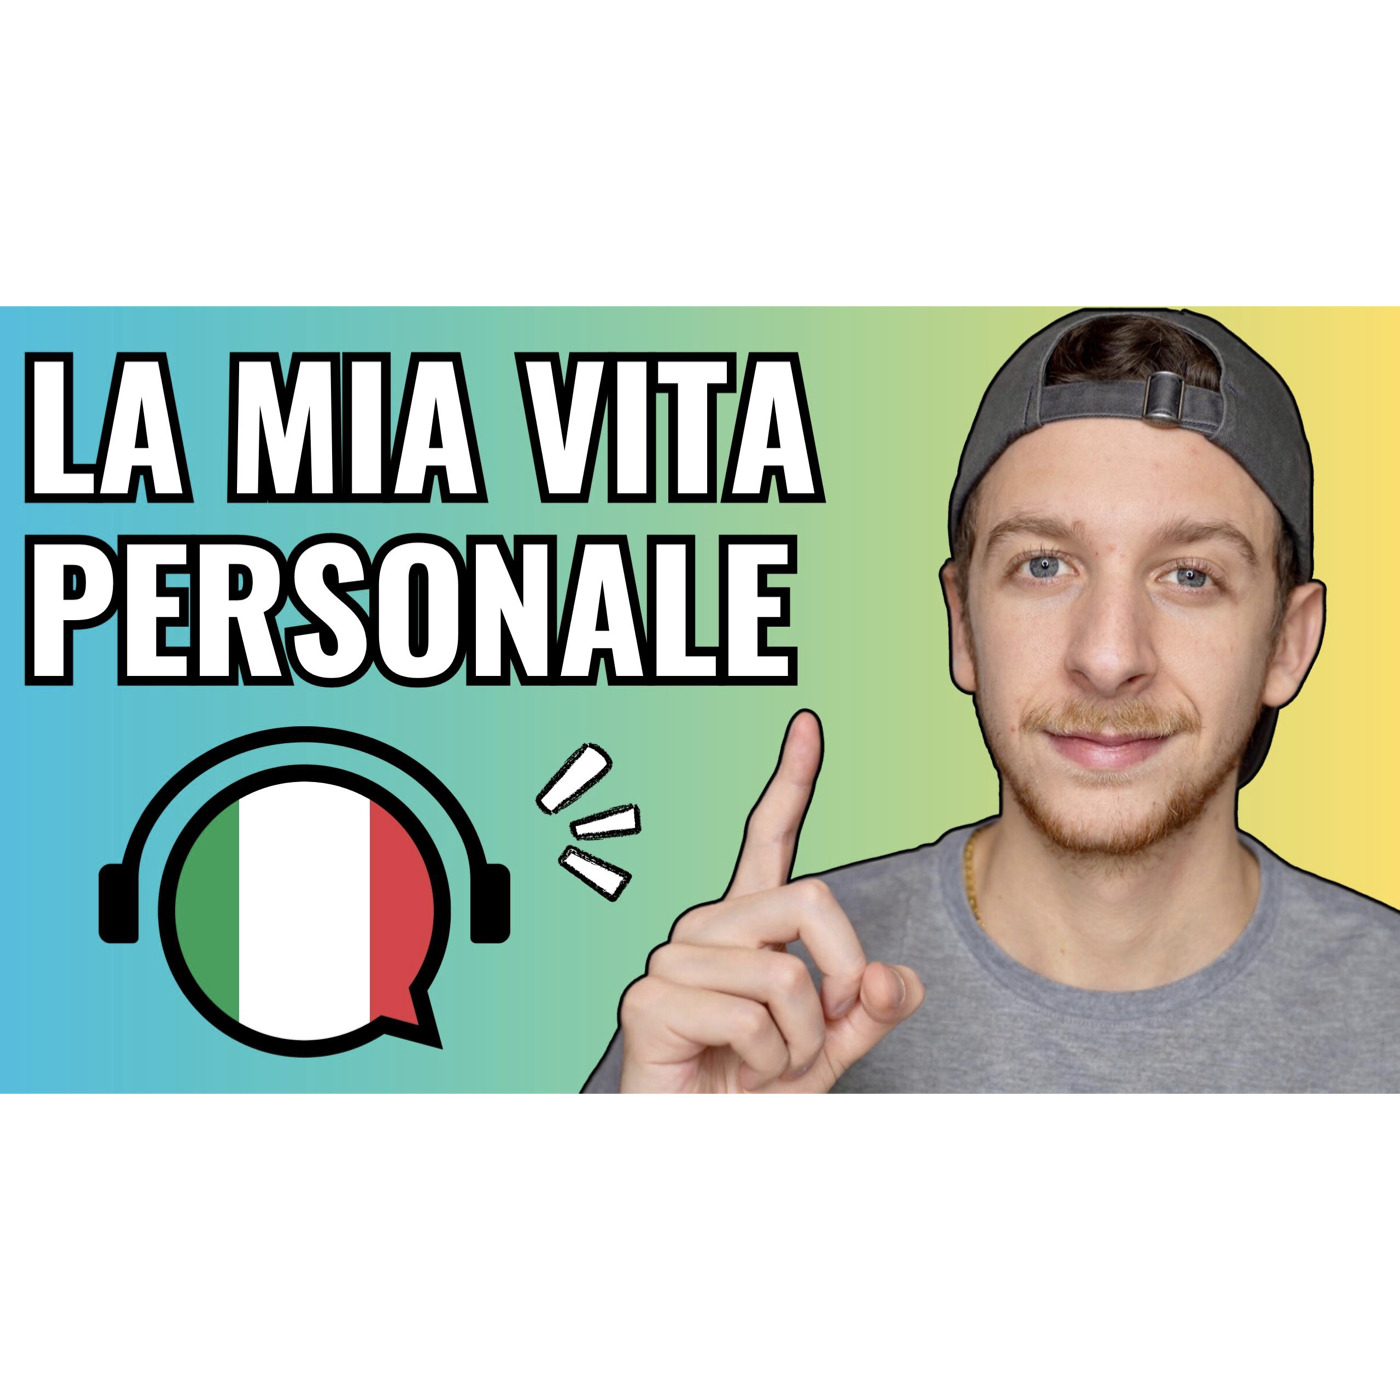 Episode 572: Aree della mia vita PERSONALE su cui sto lavorando | Imparare l’Italiano